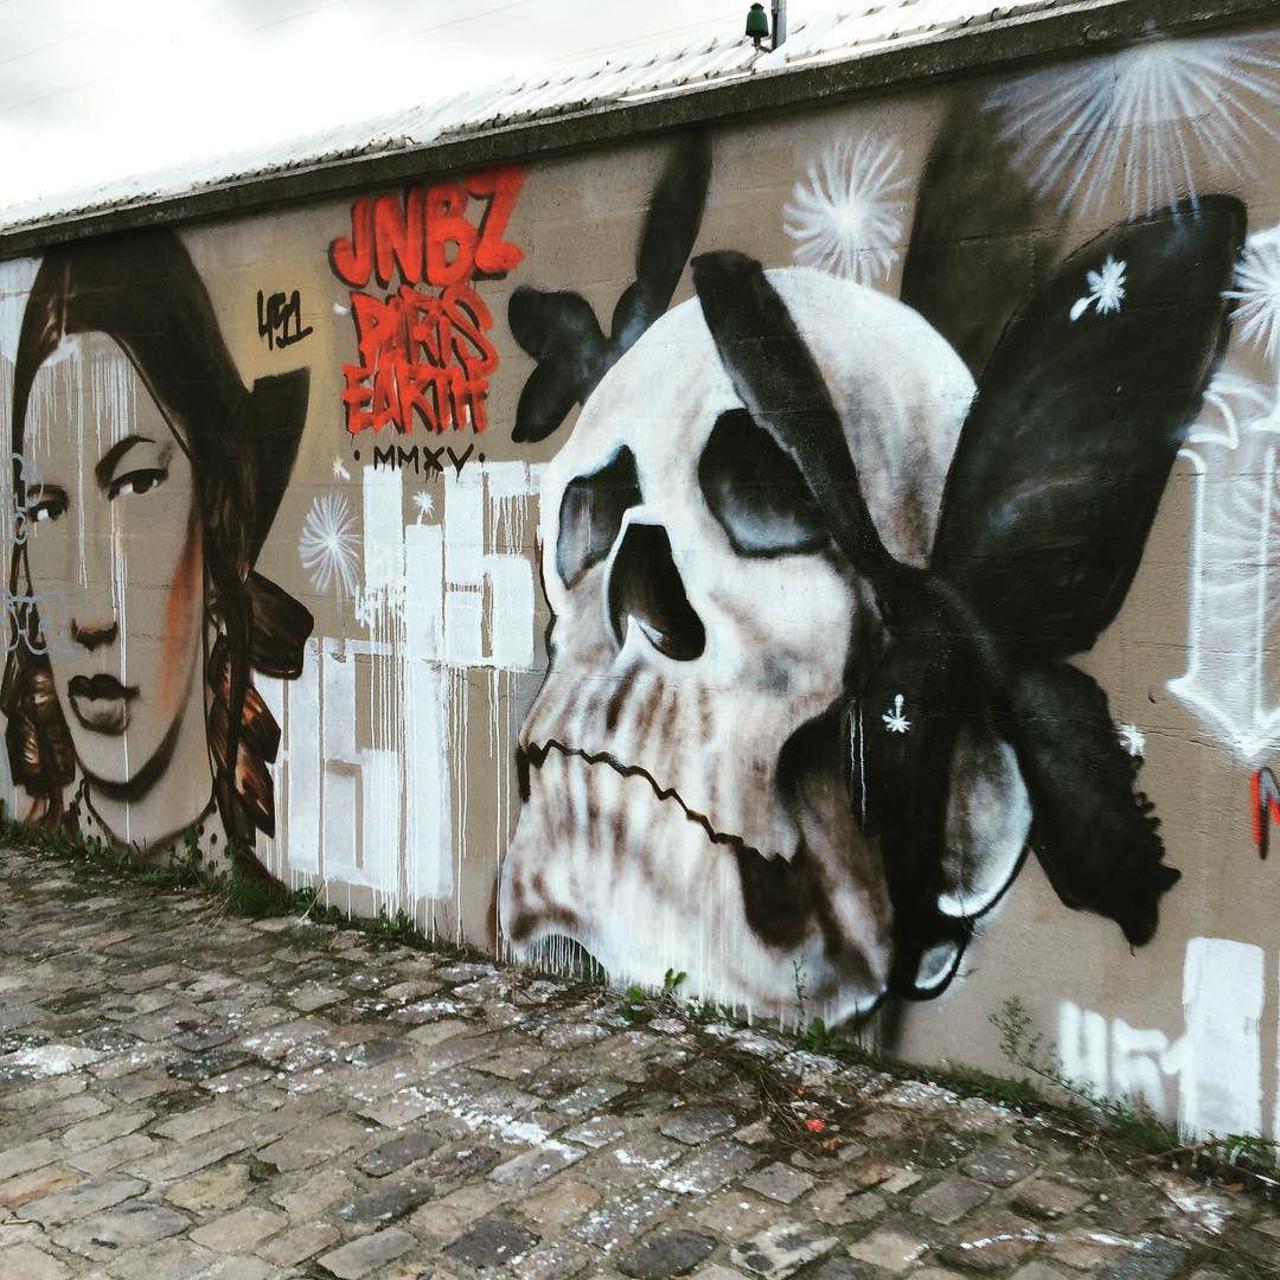 #Paris #graffiti photo by @allaboutparisandbeyond http://ift.tt/1M4BCSH #StreetArt http://t.co/gAwmthVSyt